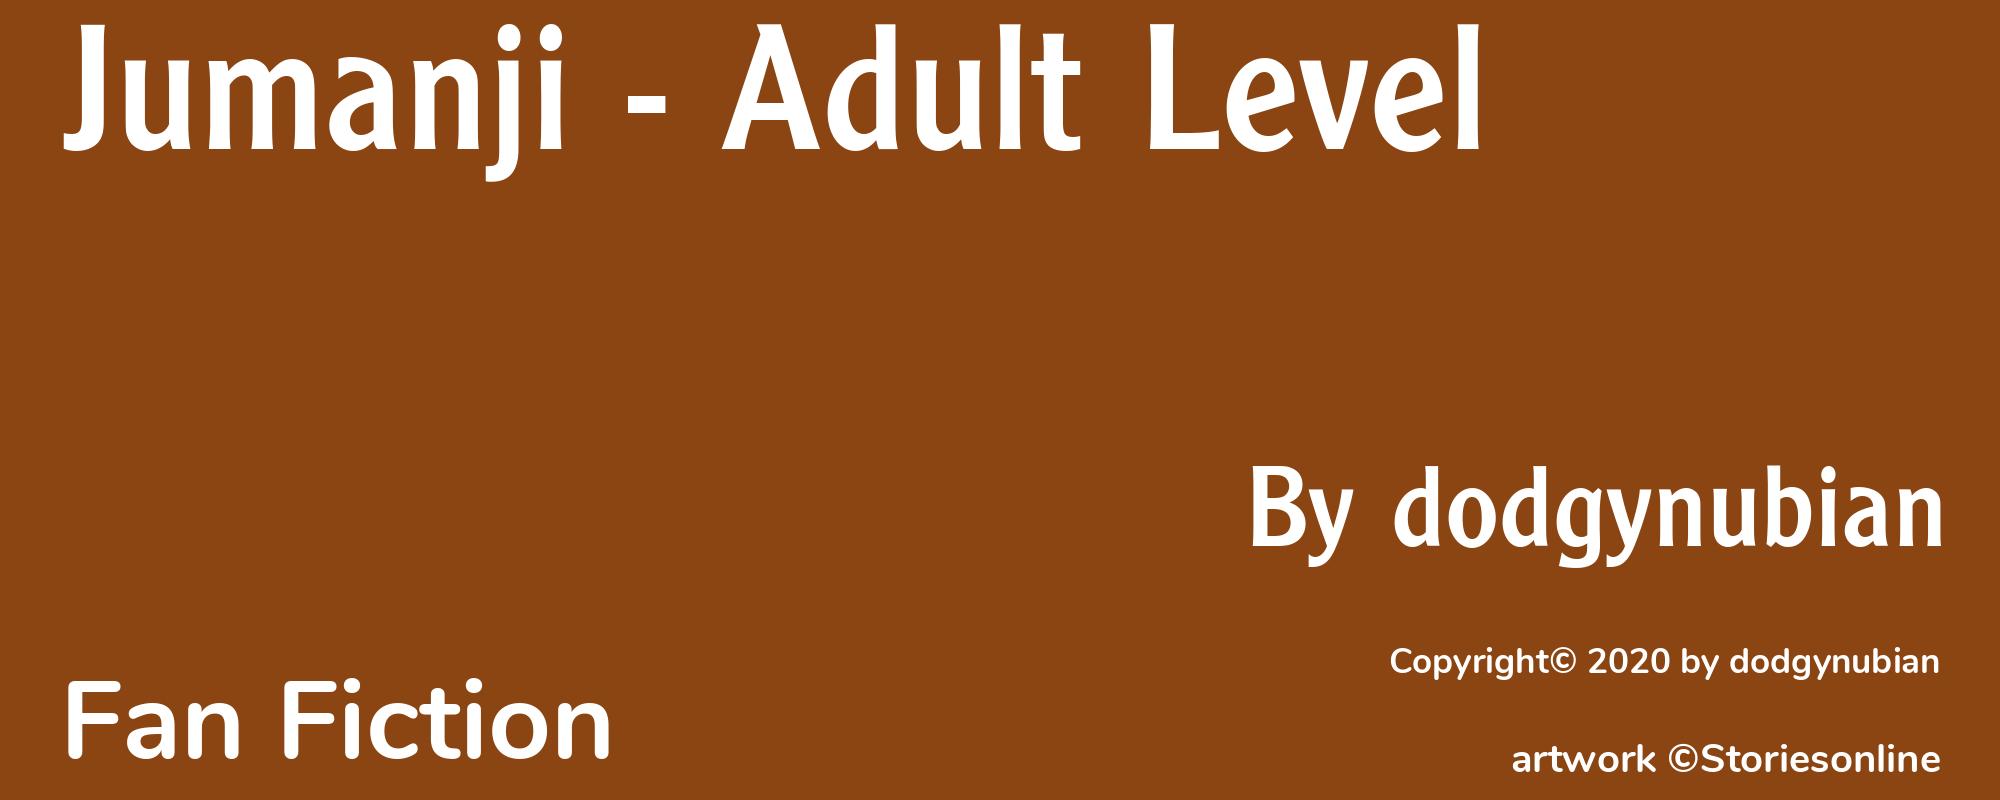 Jumanji - Adult Level - Cover